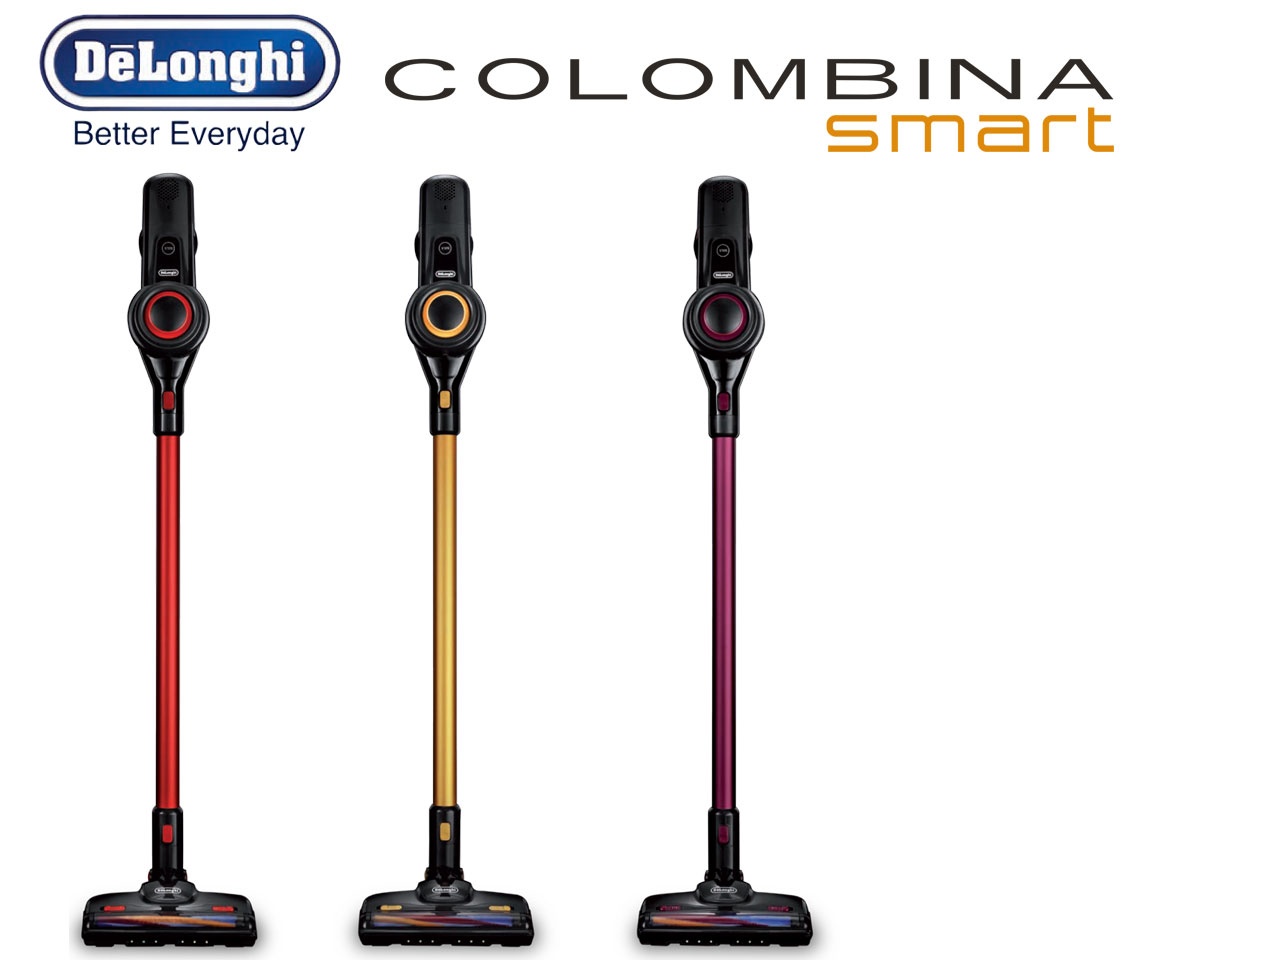 COLOMBINA Smart, l’aspirateur balai multifonction, signé De’Longhi